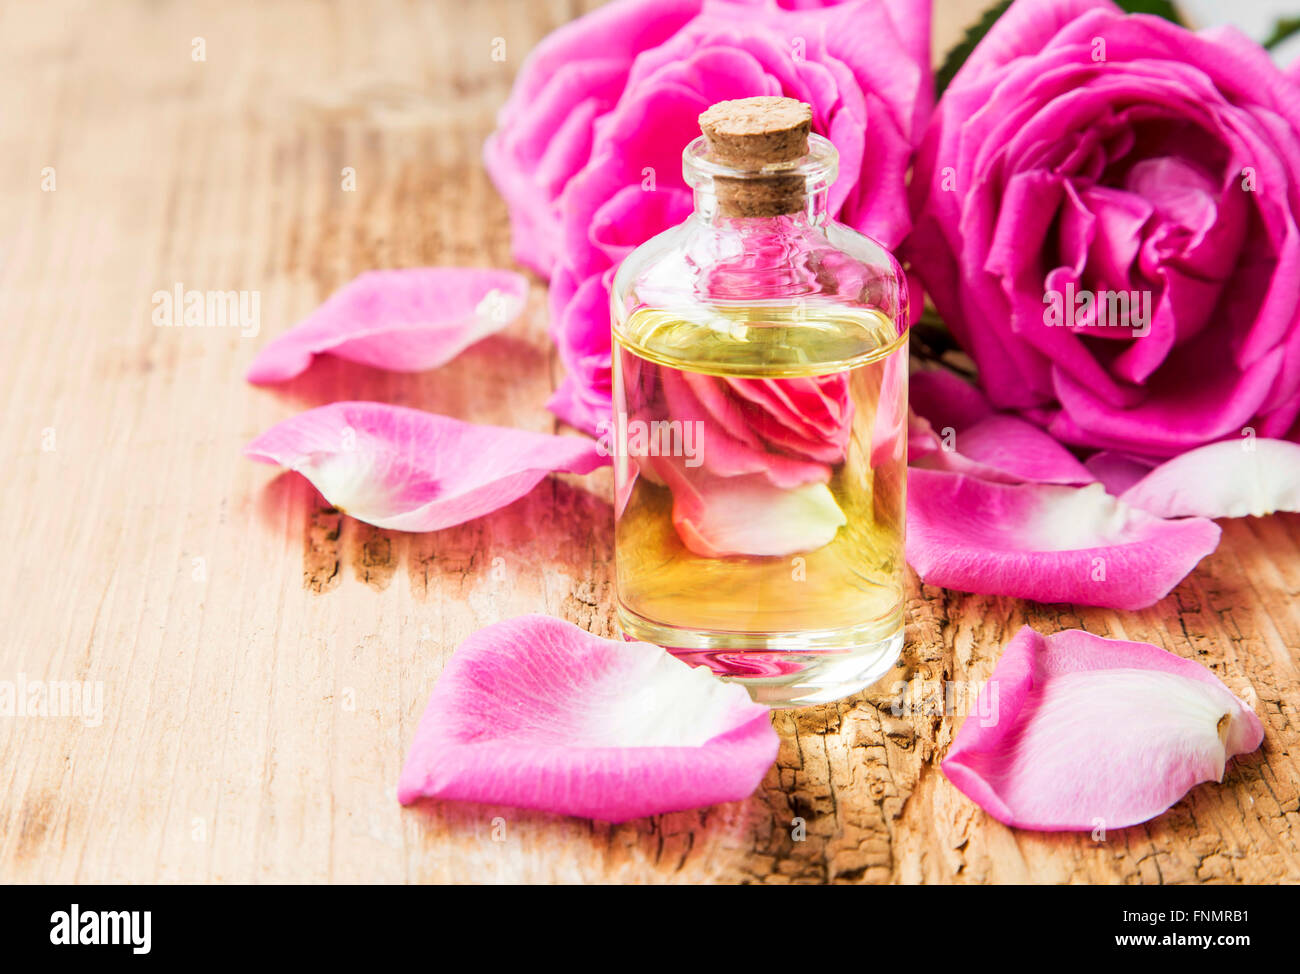 Rose Atherisches Ol In Eine Flasche Mit Rosa Rosen Und Rosenblatter Auf Holzbrett Stockfotografie Alamy